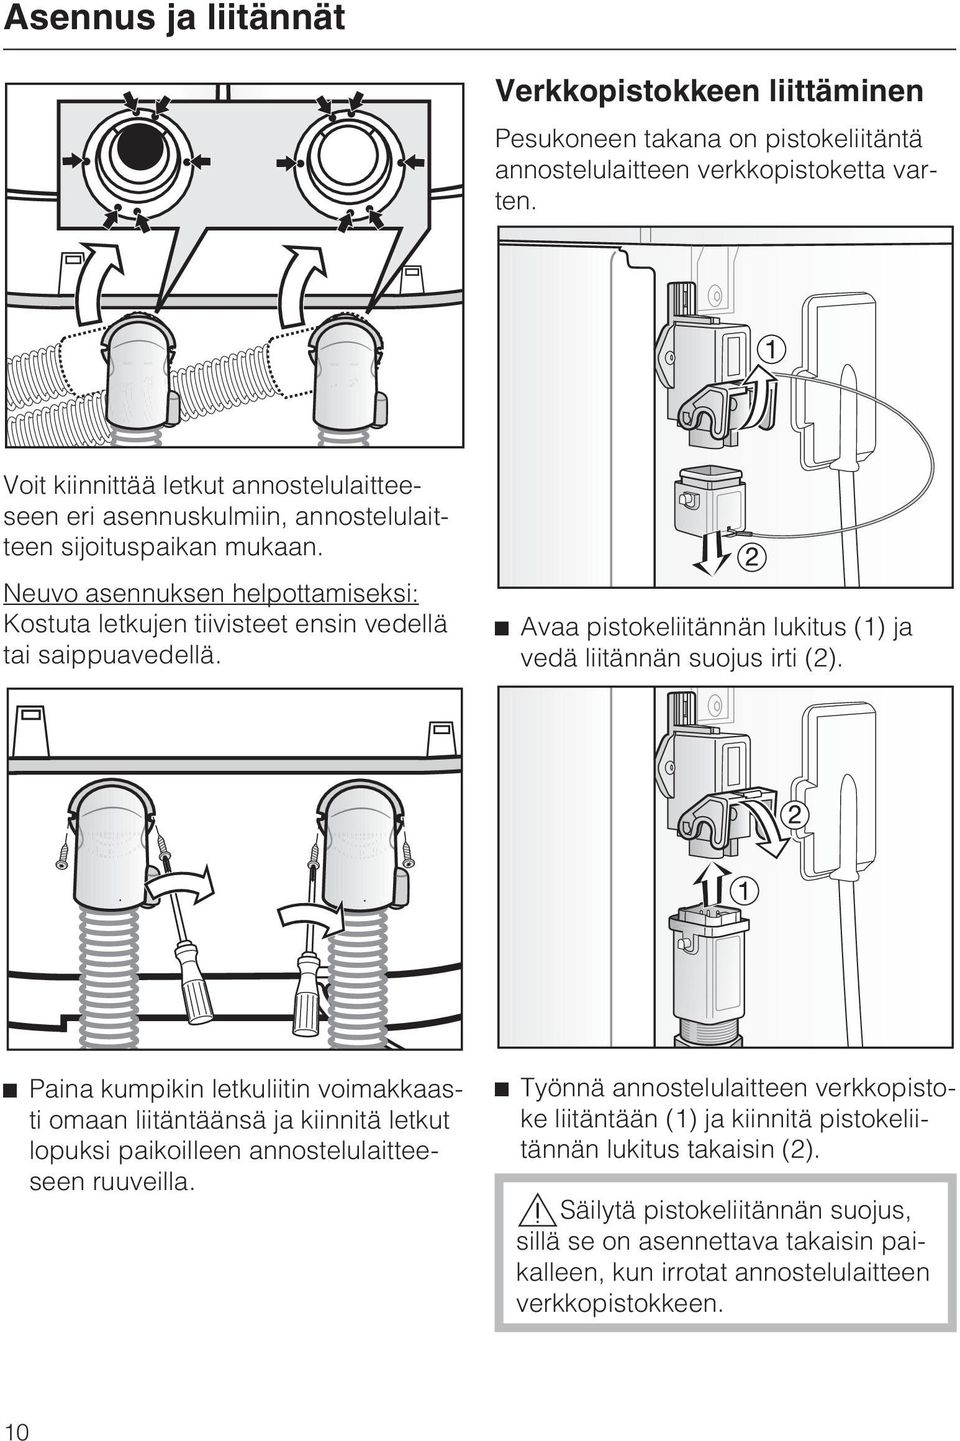 Neuvo asennuksen helpottamiseksi: Kostuta letkujen tiivisteet ensin vedellä tai saippuavedellä. Avaa pistokeliitännän lukitus (1) ja vedä liitännän suojus irti (2).